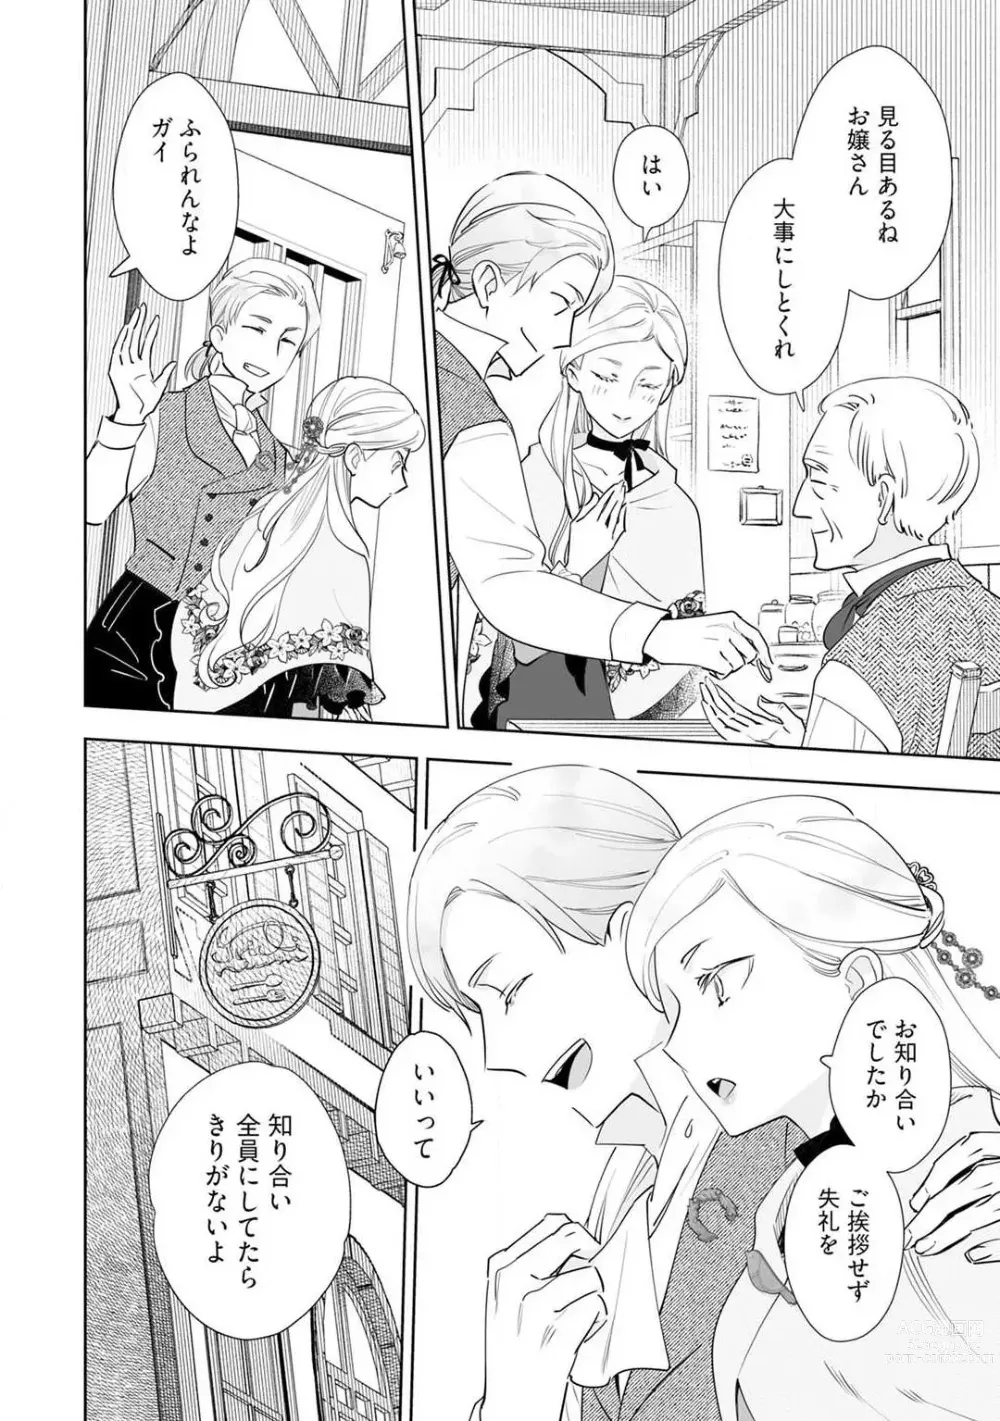 Page 269 of manga Konyaku Hakisareta Akuyaku Reijou, Ikemen Shisanka ni Kyuukonsaremashita. 1-9